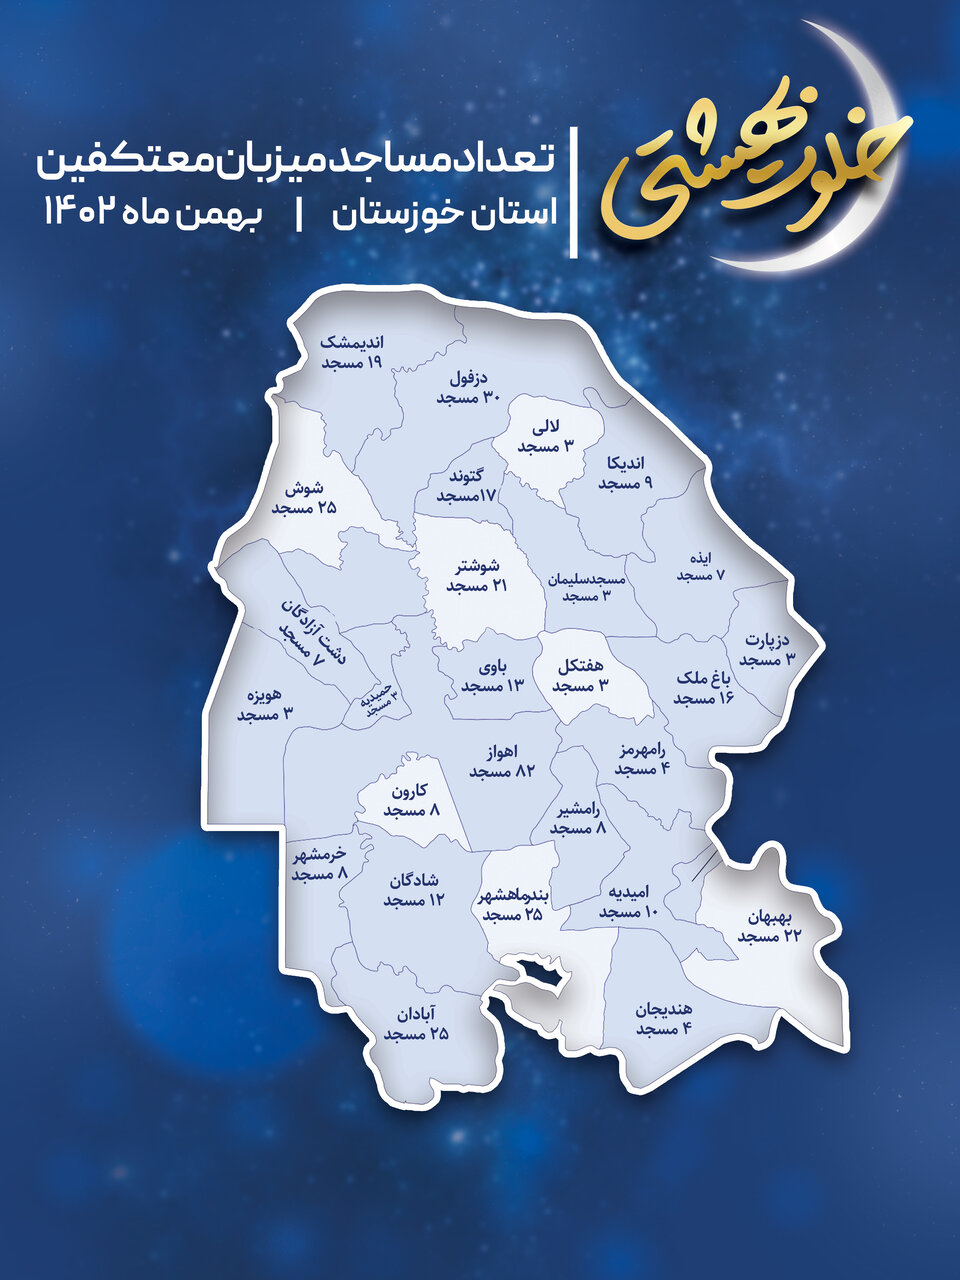 تعداد مساجد برگزار کننده مراسم اعتکاف در خوزستان به تفکیک شهرستان